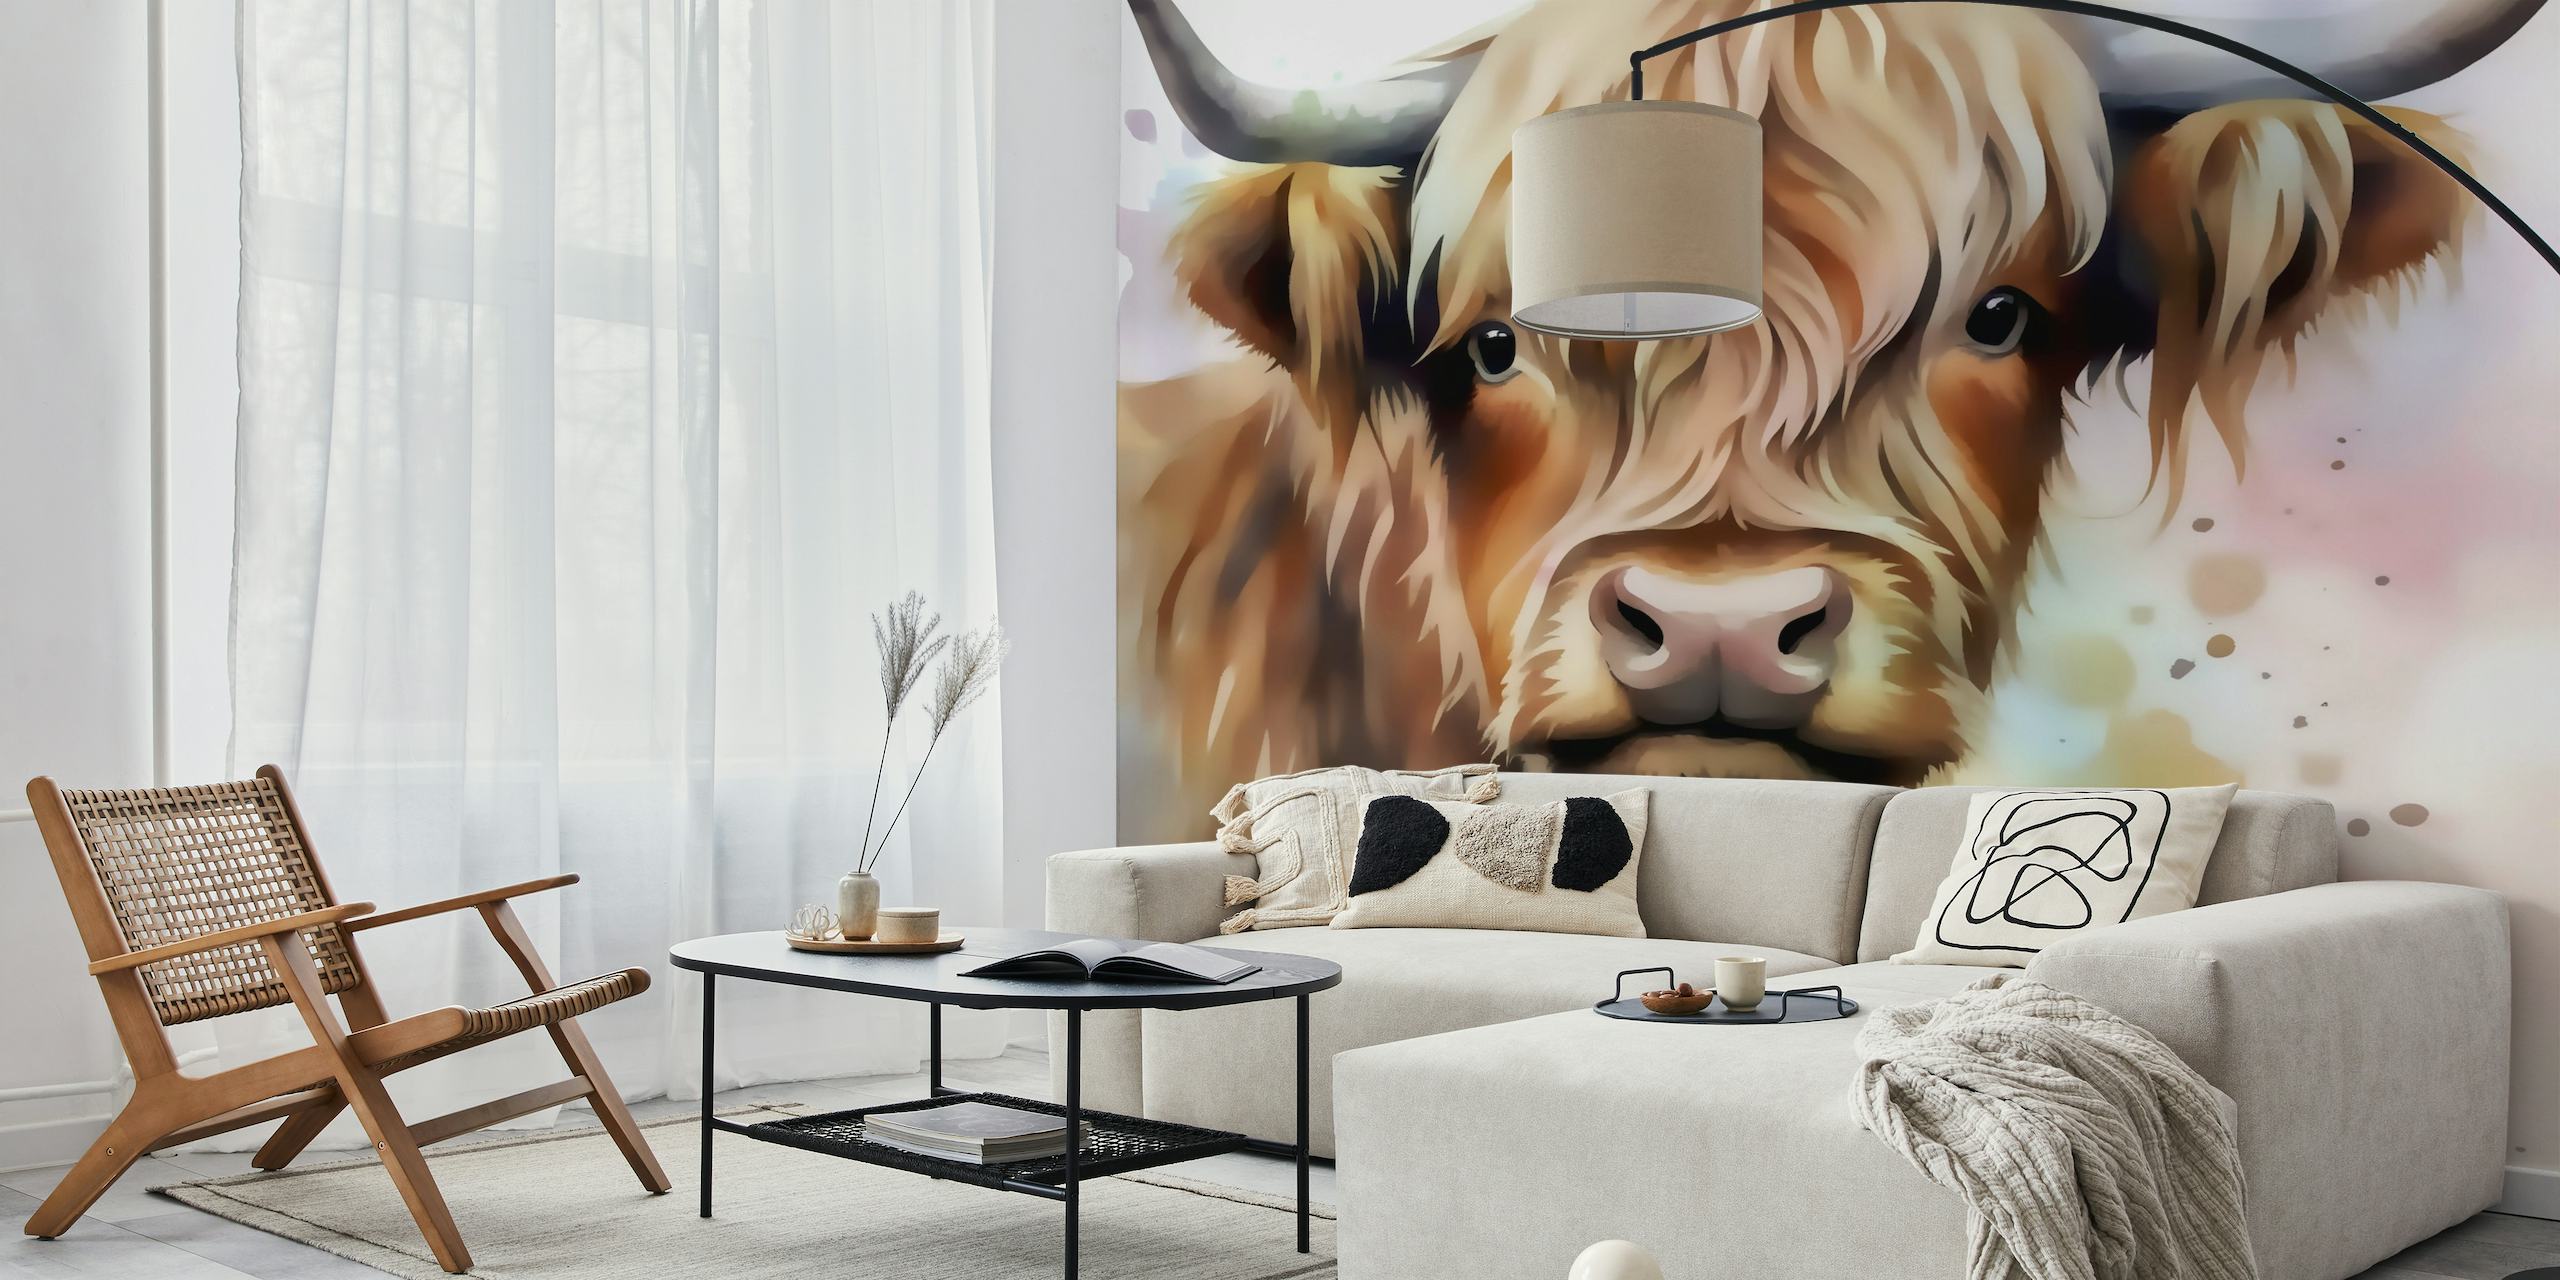 Fotomural vinílico de arte de vaca das terras altas com desenho em aquarela